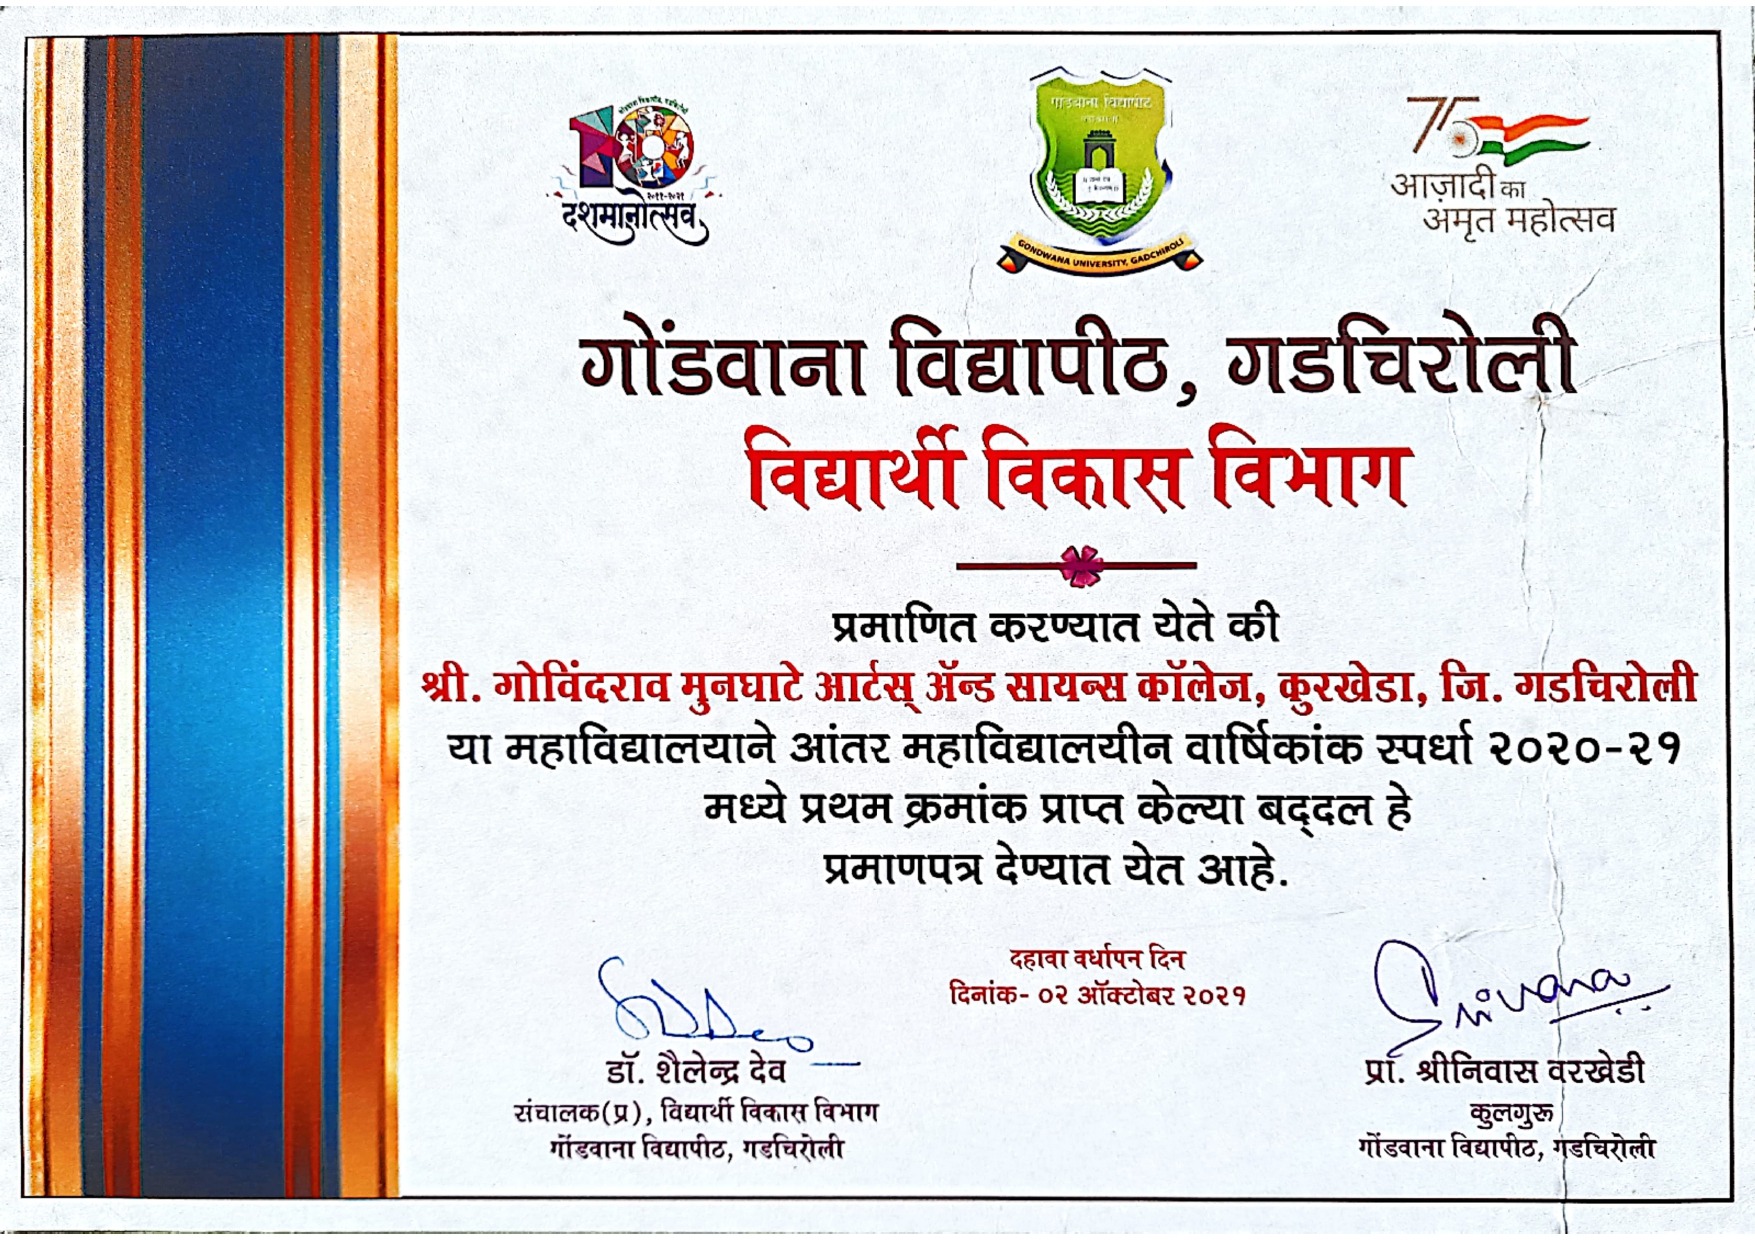 Mrudhagandh Award 2020-21